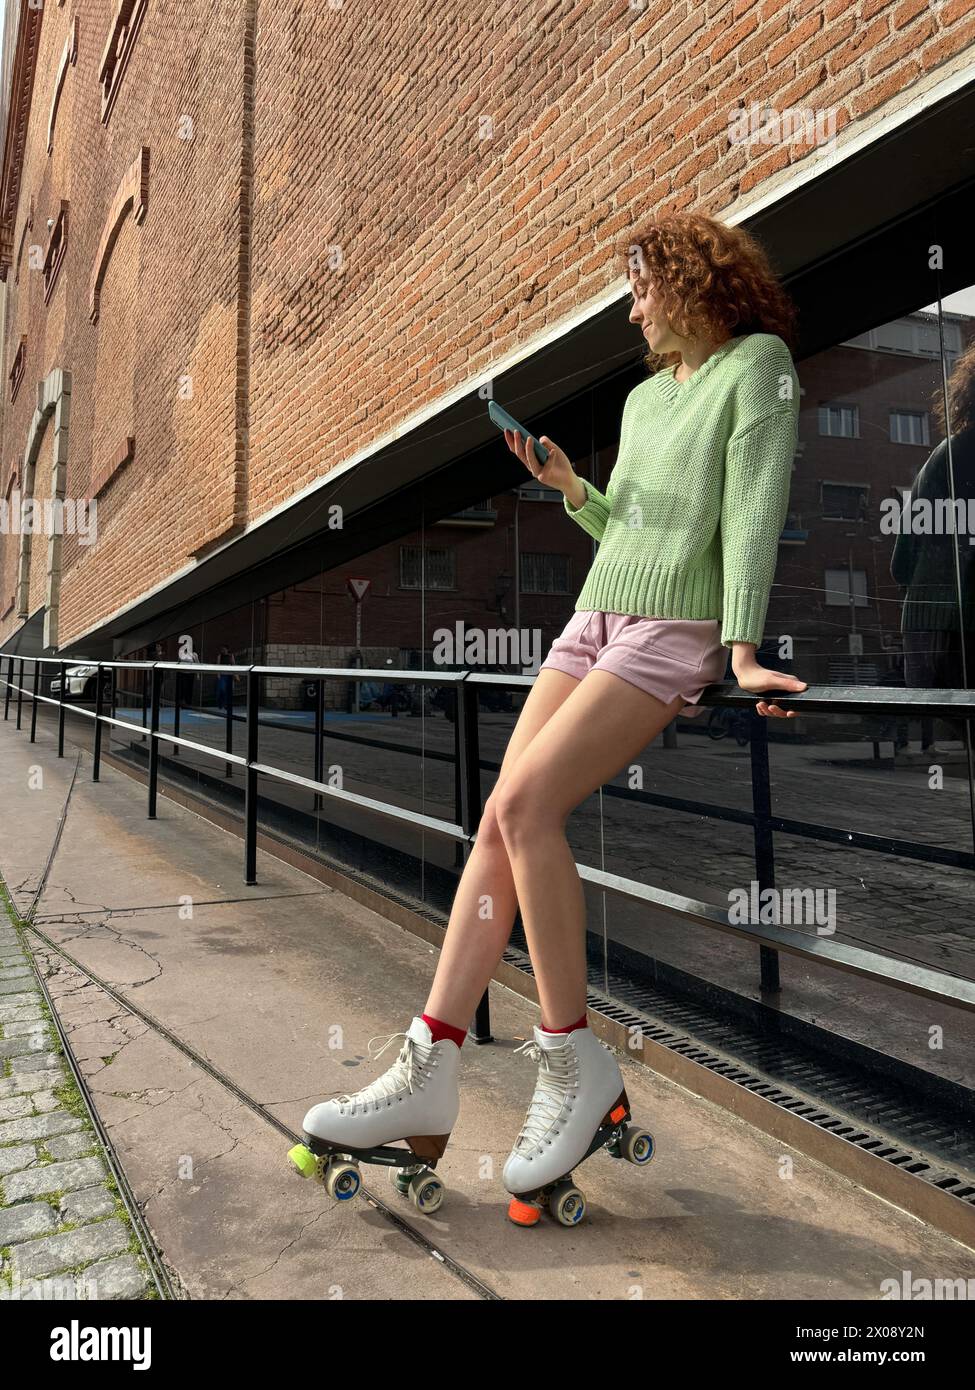 Eine junge rothaarige Frau in lässiger Kleidung Rollschuhlaufen, während sie mit ihrem Smartphone interagiert, ein Stadtbild mit Industriearchitektur, der das umrahmt Stockfoto